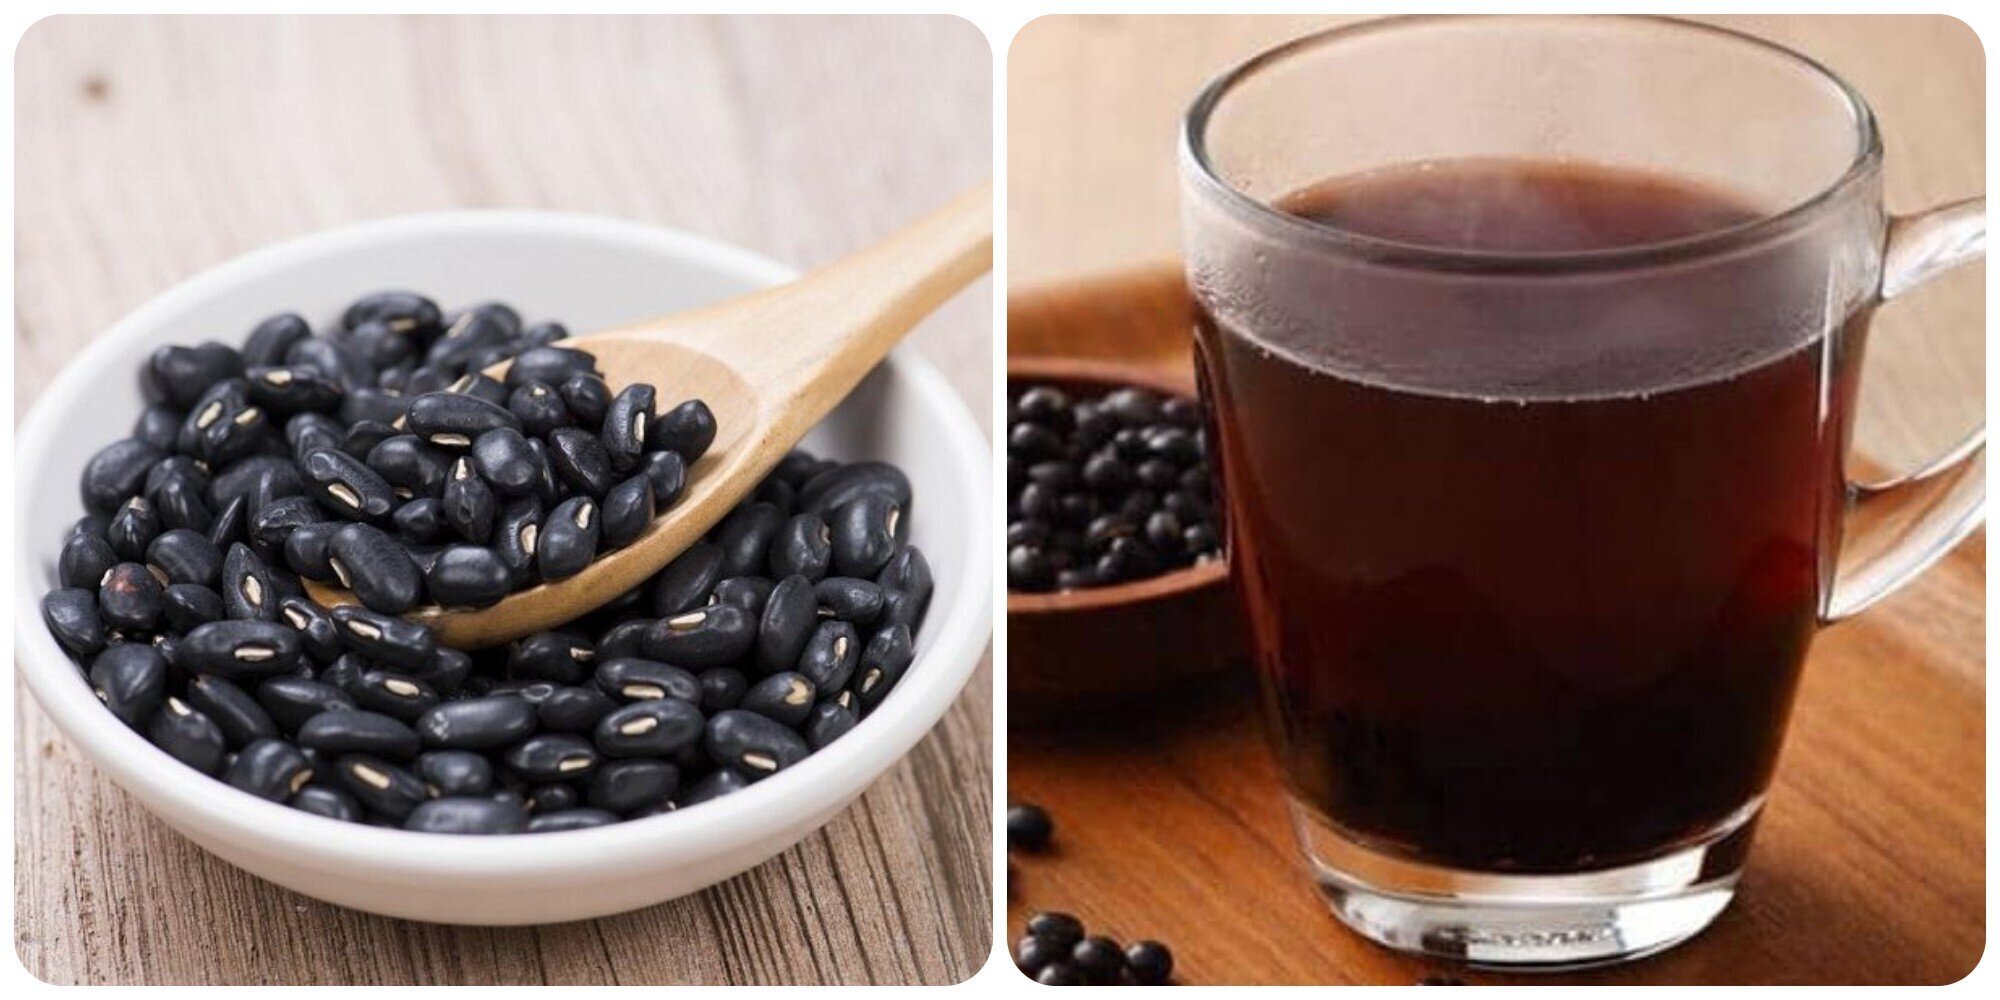 Uống nước đậu đen rang đúng cách mang lại nhiều lợi ích đối với sức khoẻ.